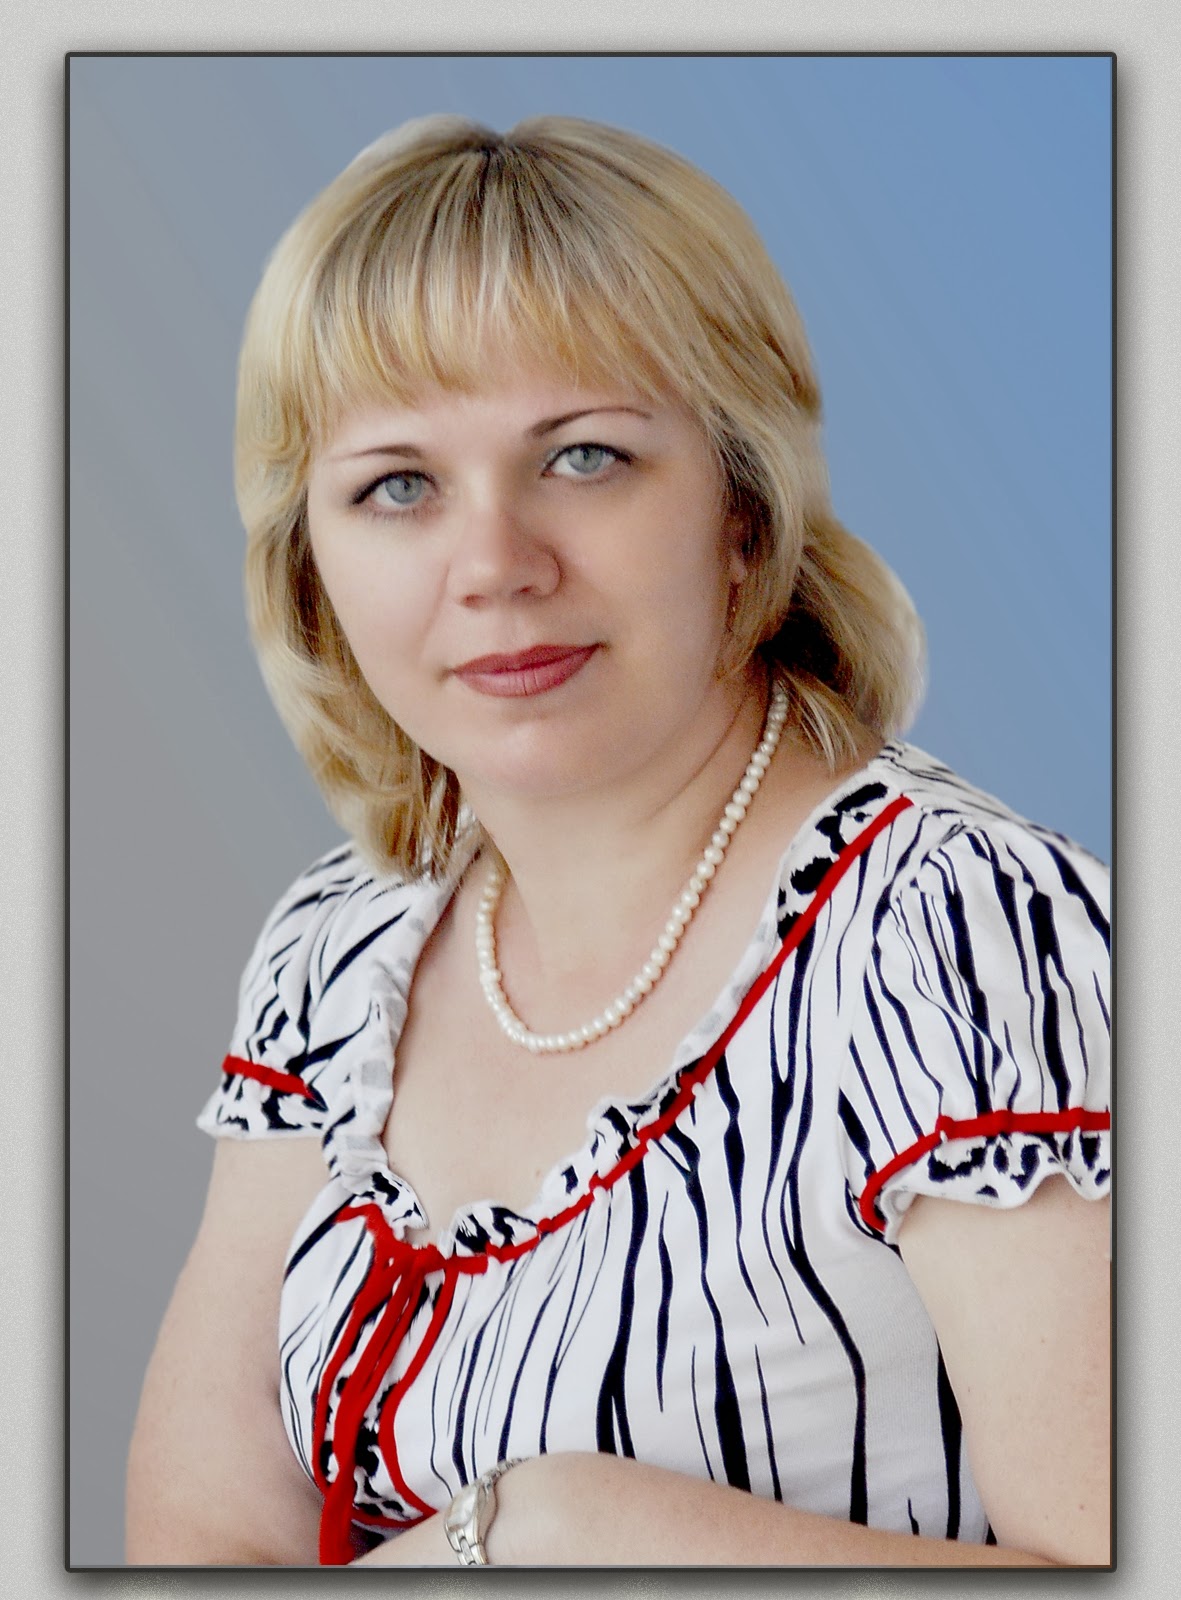 Данилова Ольга Александровна